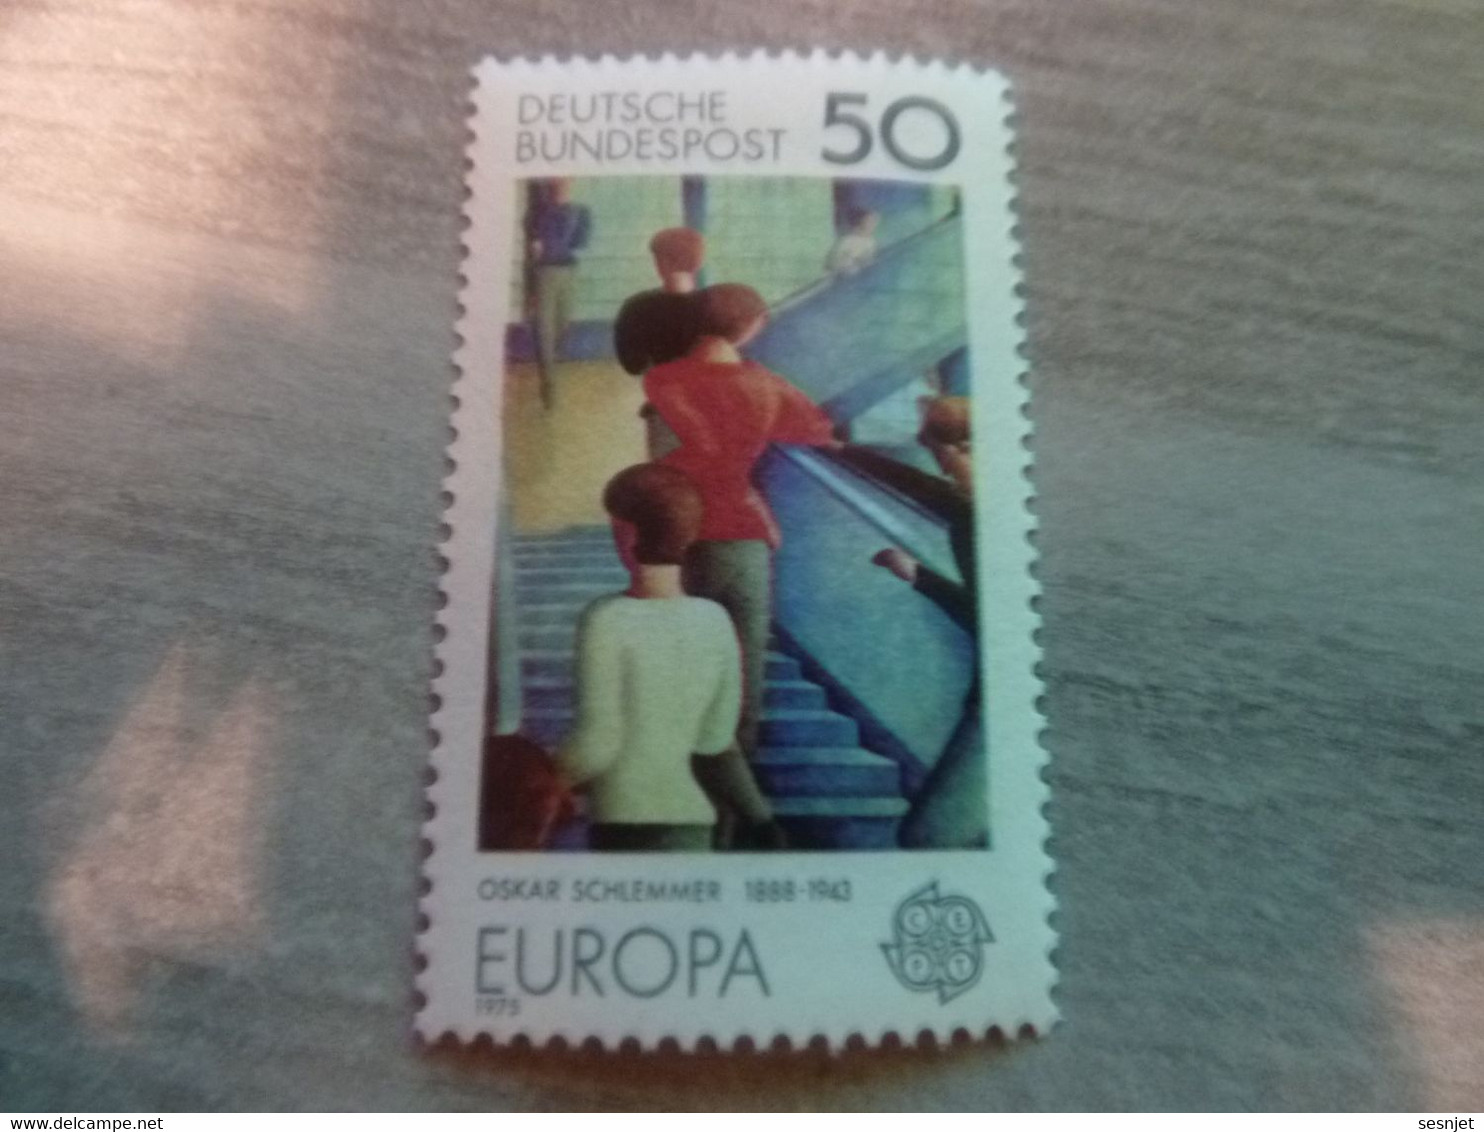 Deutsche Bundespost - Europa - 50 - Multicolore - Neuf Sans Charnière - Année 1975 - - 1975